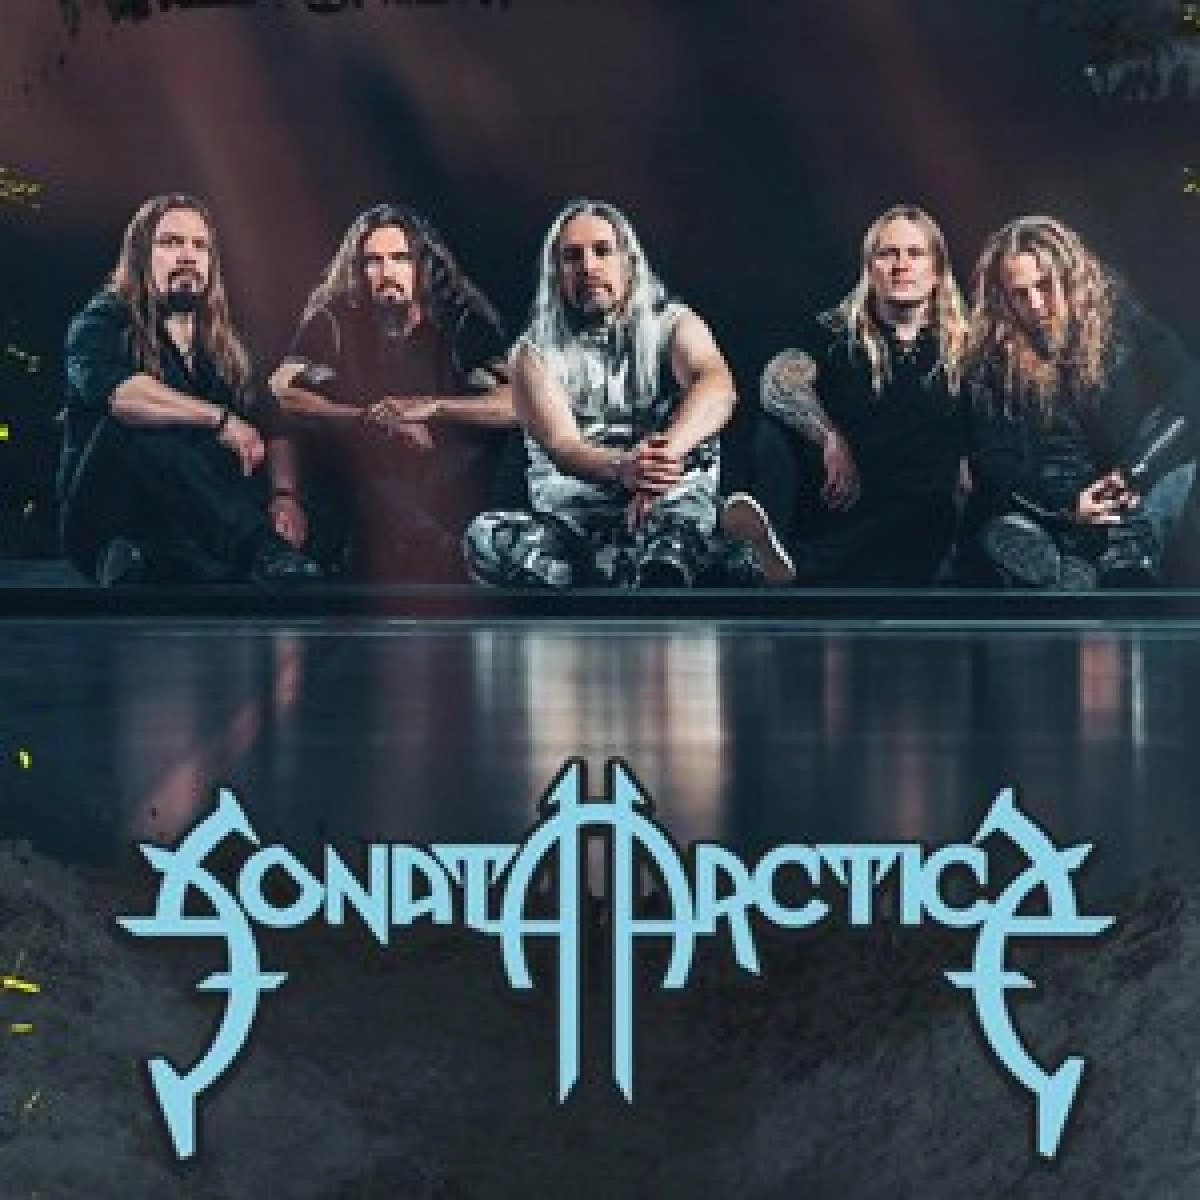 Sonata Arctica - Firewind - Serious Black en Backstage Werk Tickets